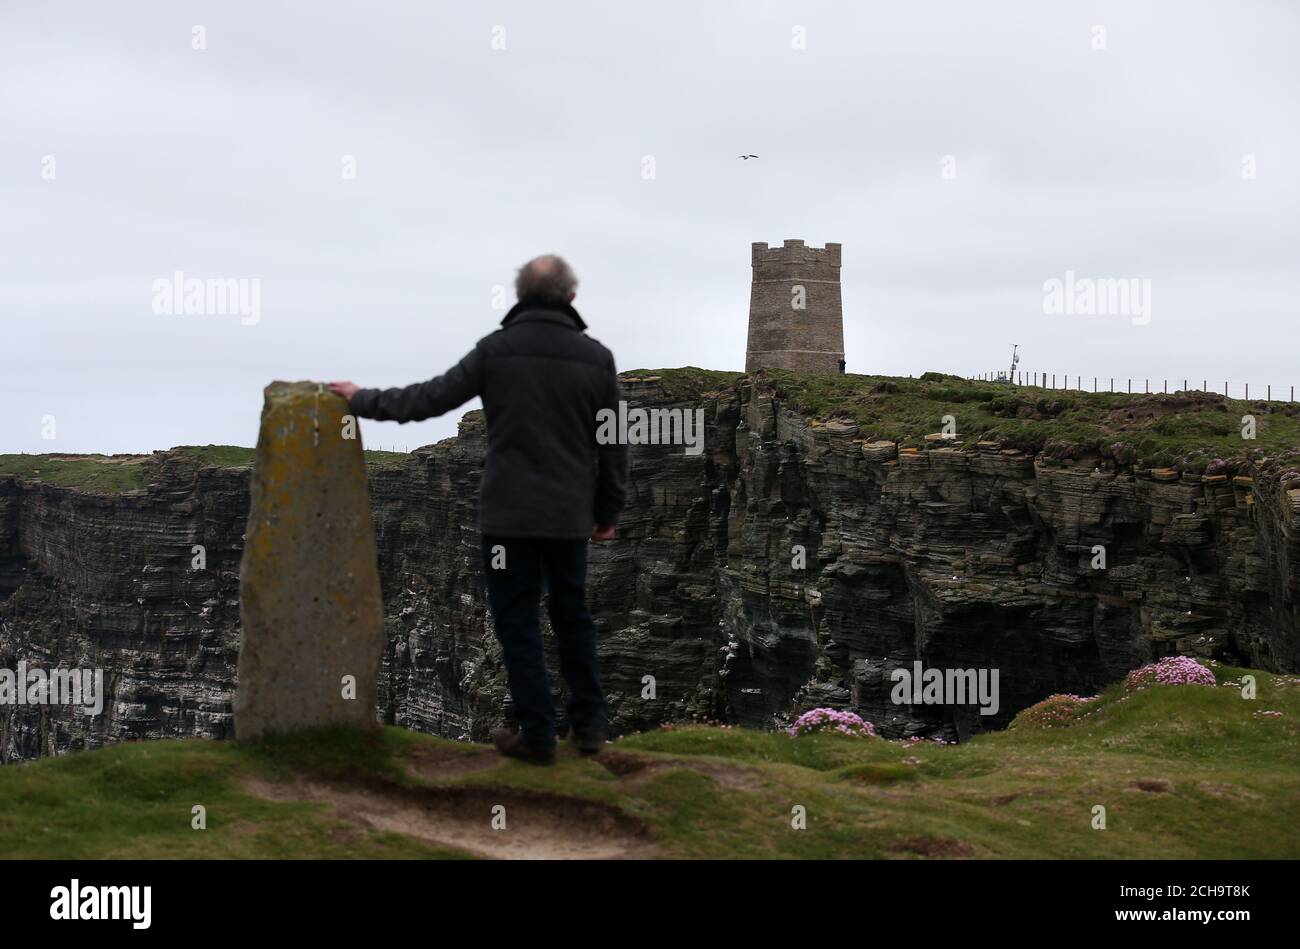 Los visitantes caminan a lo largo de las cimas del acantilado sobre el mar en Marwick Head en Orkney, donde se alza la torre construida para honrar la memoria de Lord Kitchener. Foto de stock